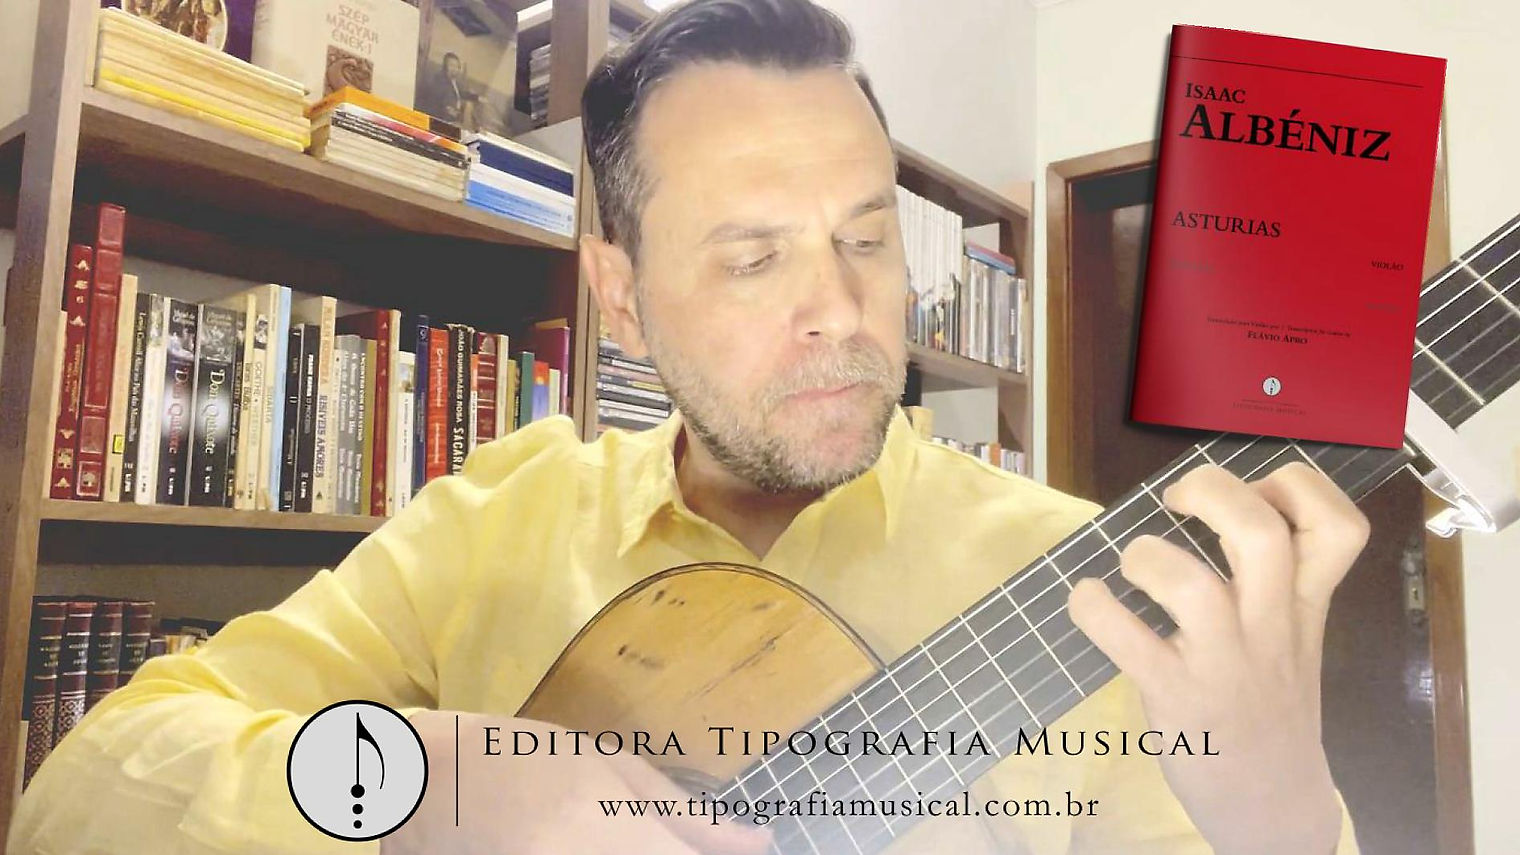 Dicas - Asturias - Albéniz - transcrição para violão por Flávio Apro